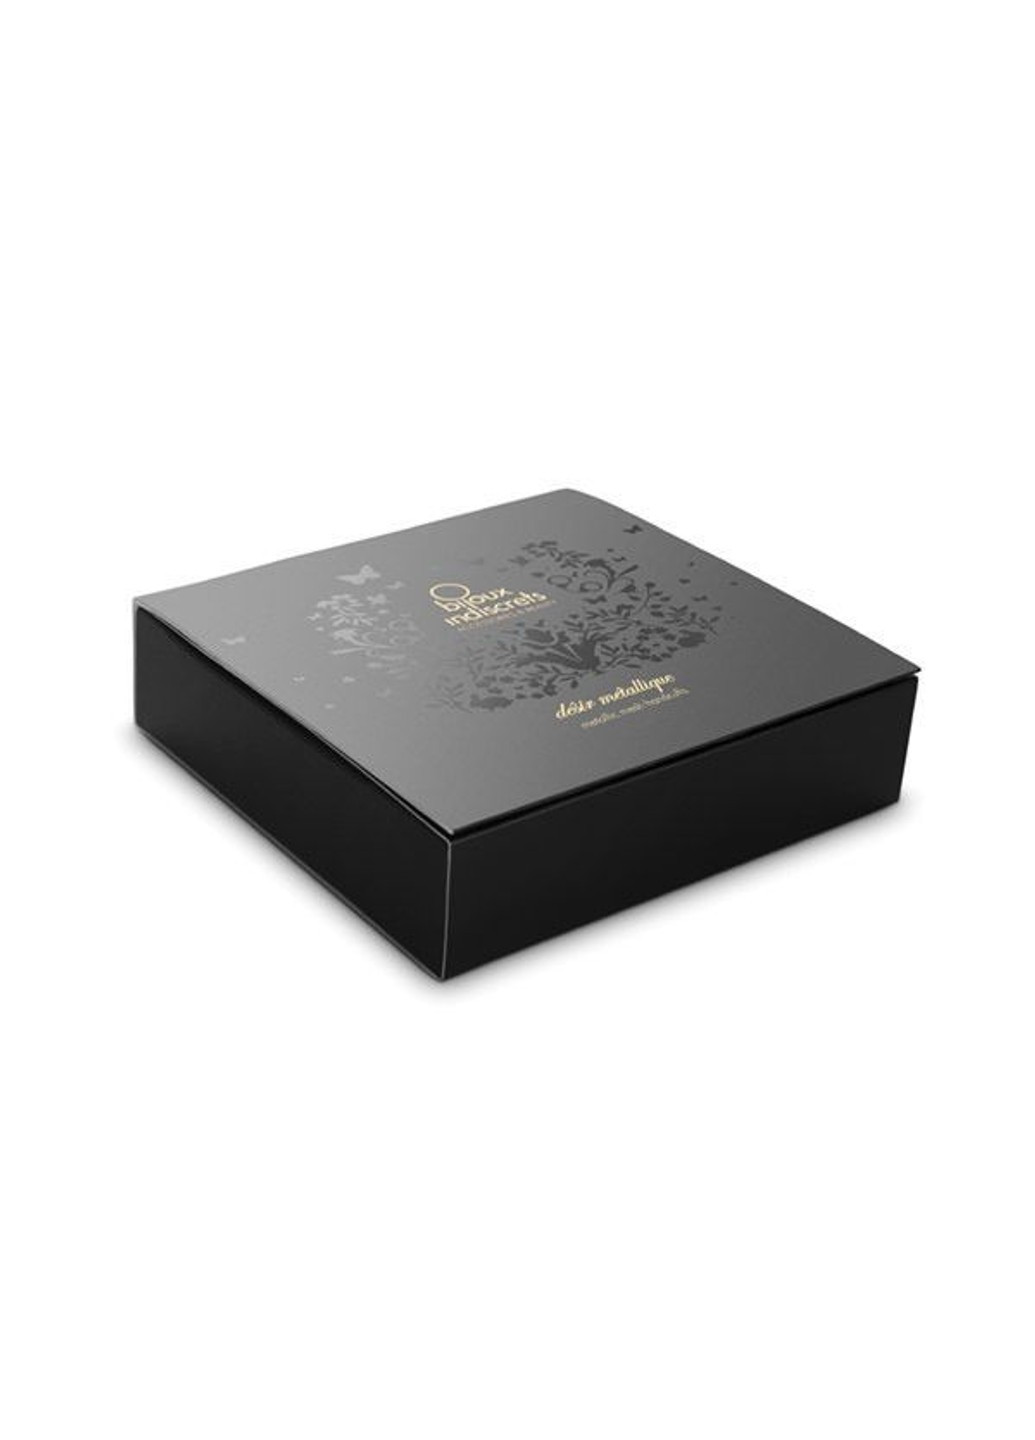 Наручники Desir Metallique Handcuffs - Gold, металлические, стильные браслеты Bijoux Indiscrets (252607229)